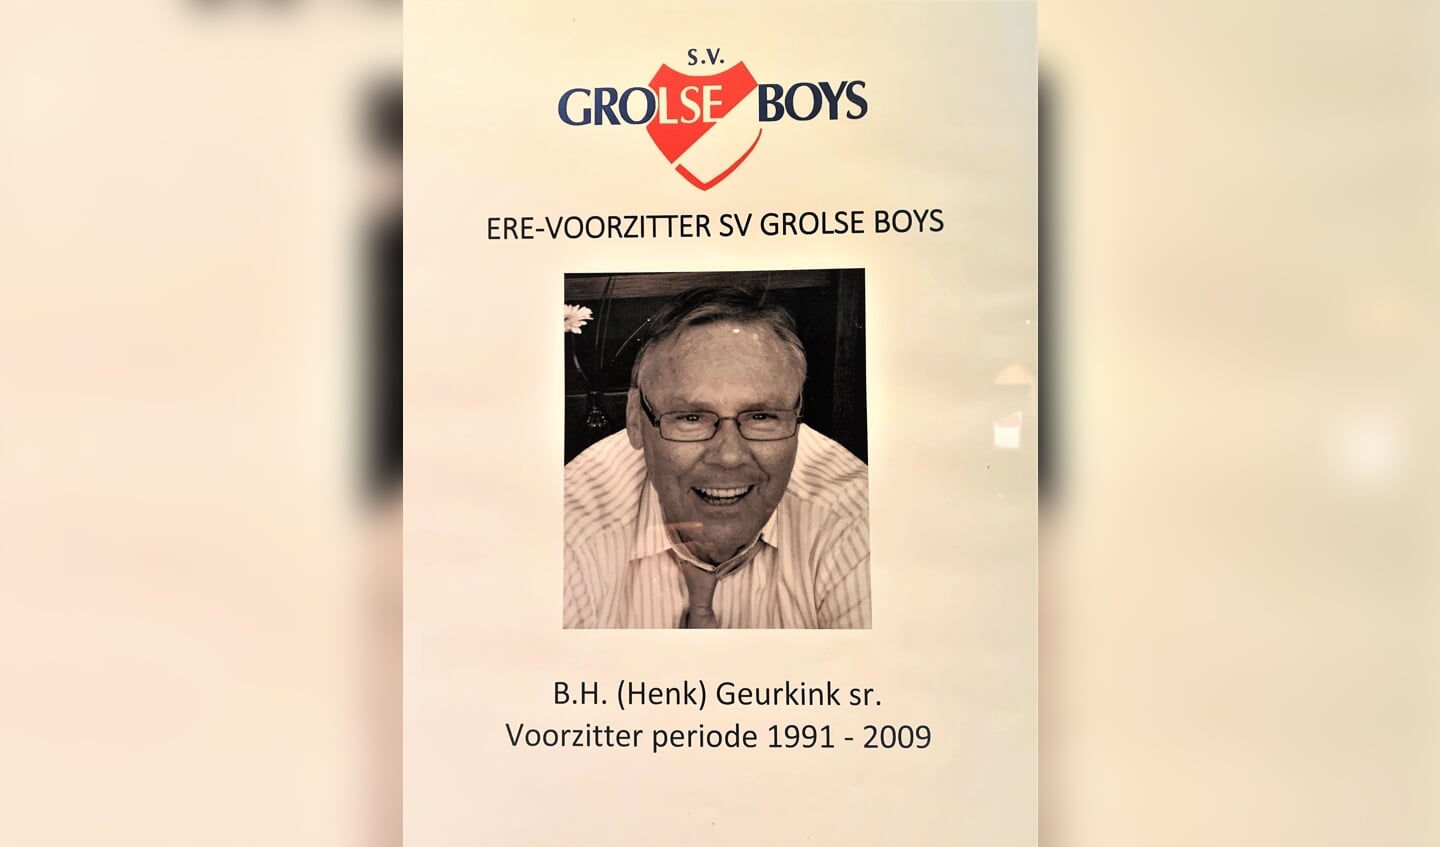 De herinnering aan Erevoorzitter Henk Geurkink van Grolse Boys wordt hooggehouden. Foto: Theo Huijskes